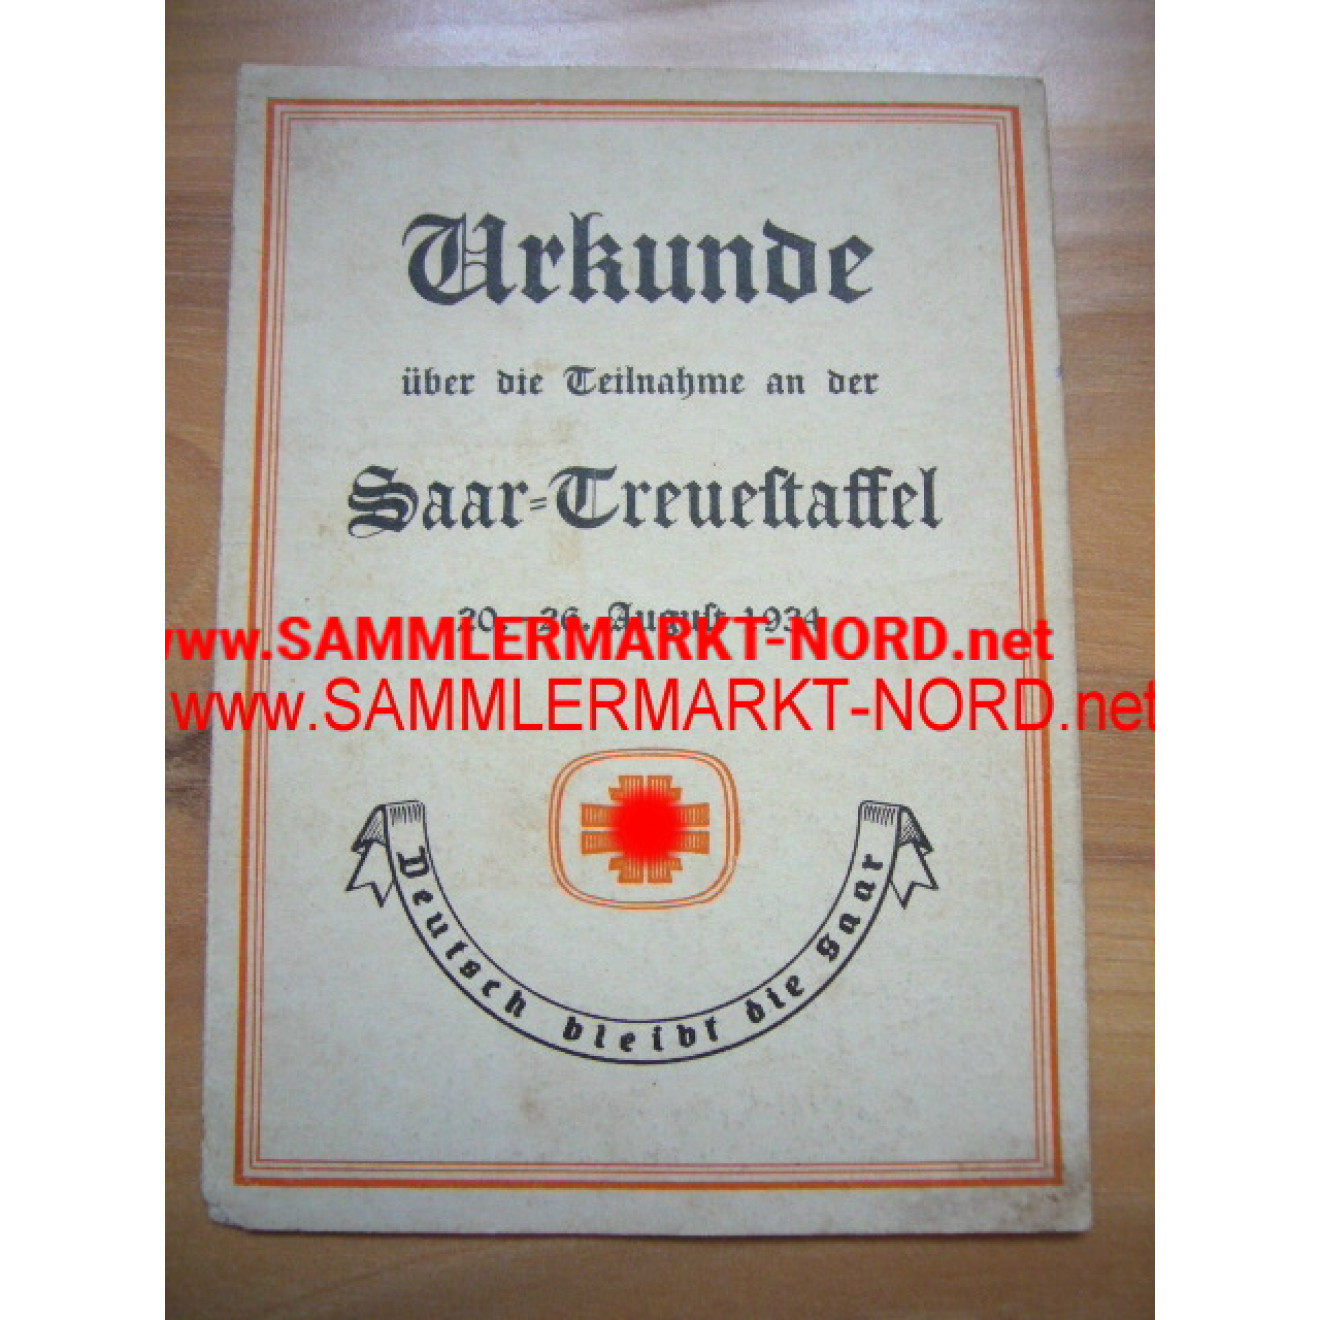 Urkunde Saar-Treuestaffel 1934